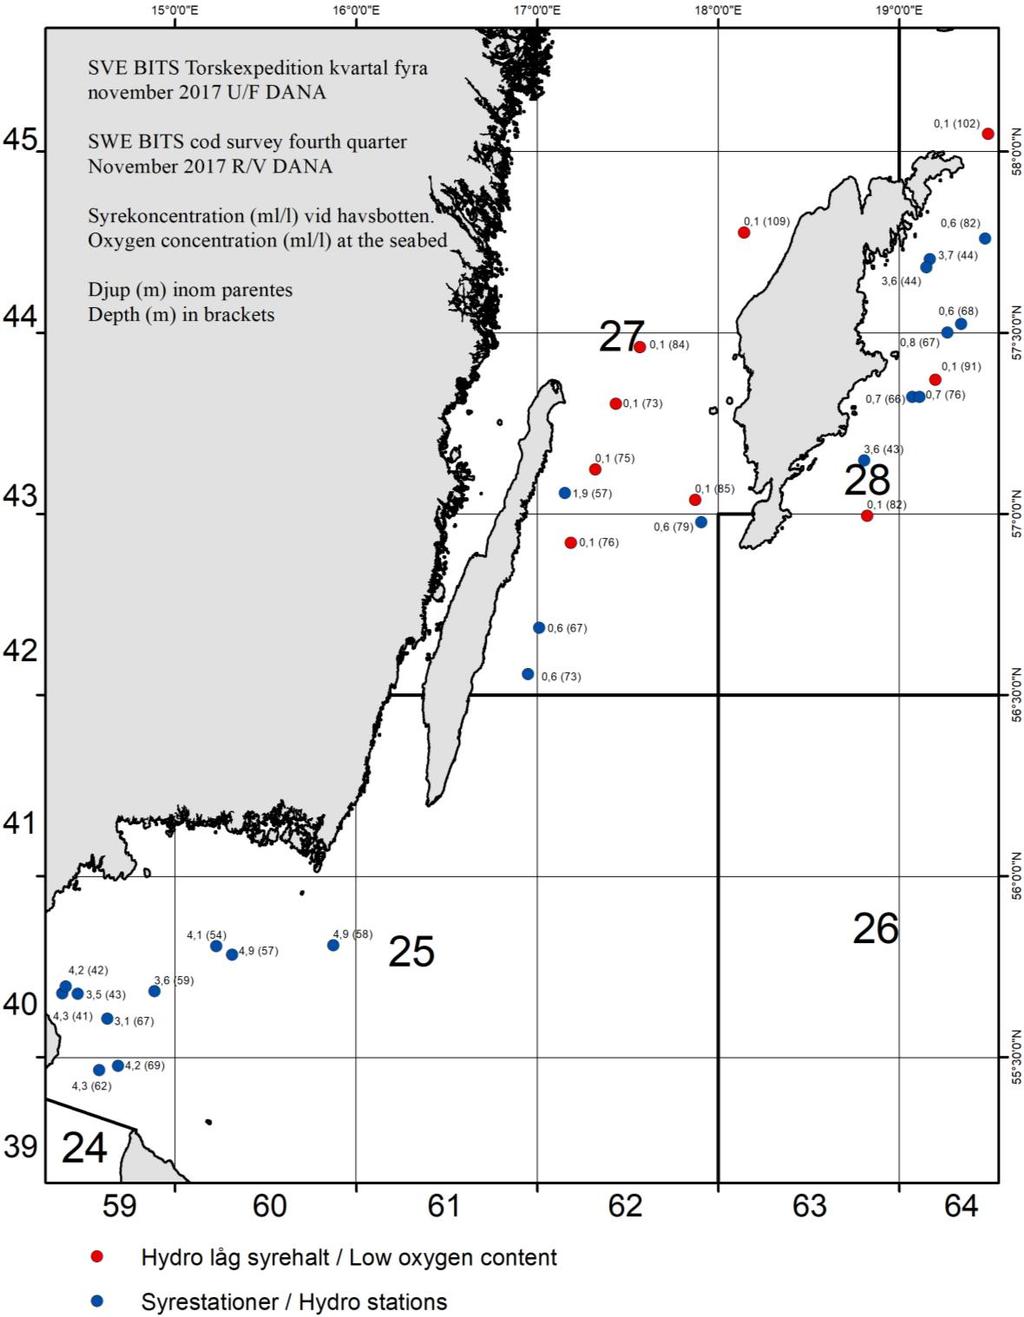 Figur 2. Syrehalter angivit 1 m ovan havsbotten vid samtliga provtagningsstationer. Siffror inom parentes anger djupet.